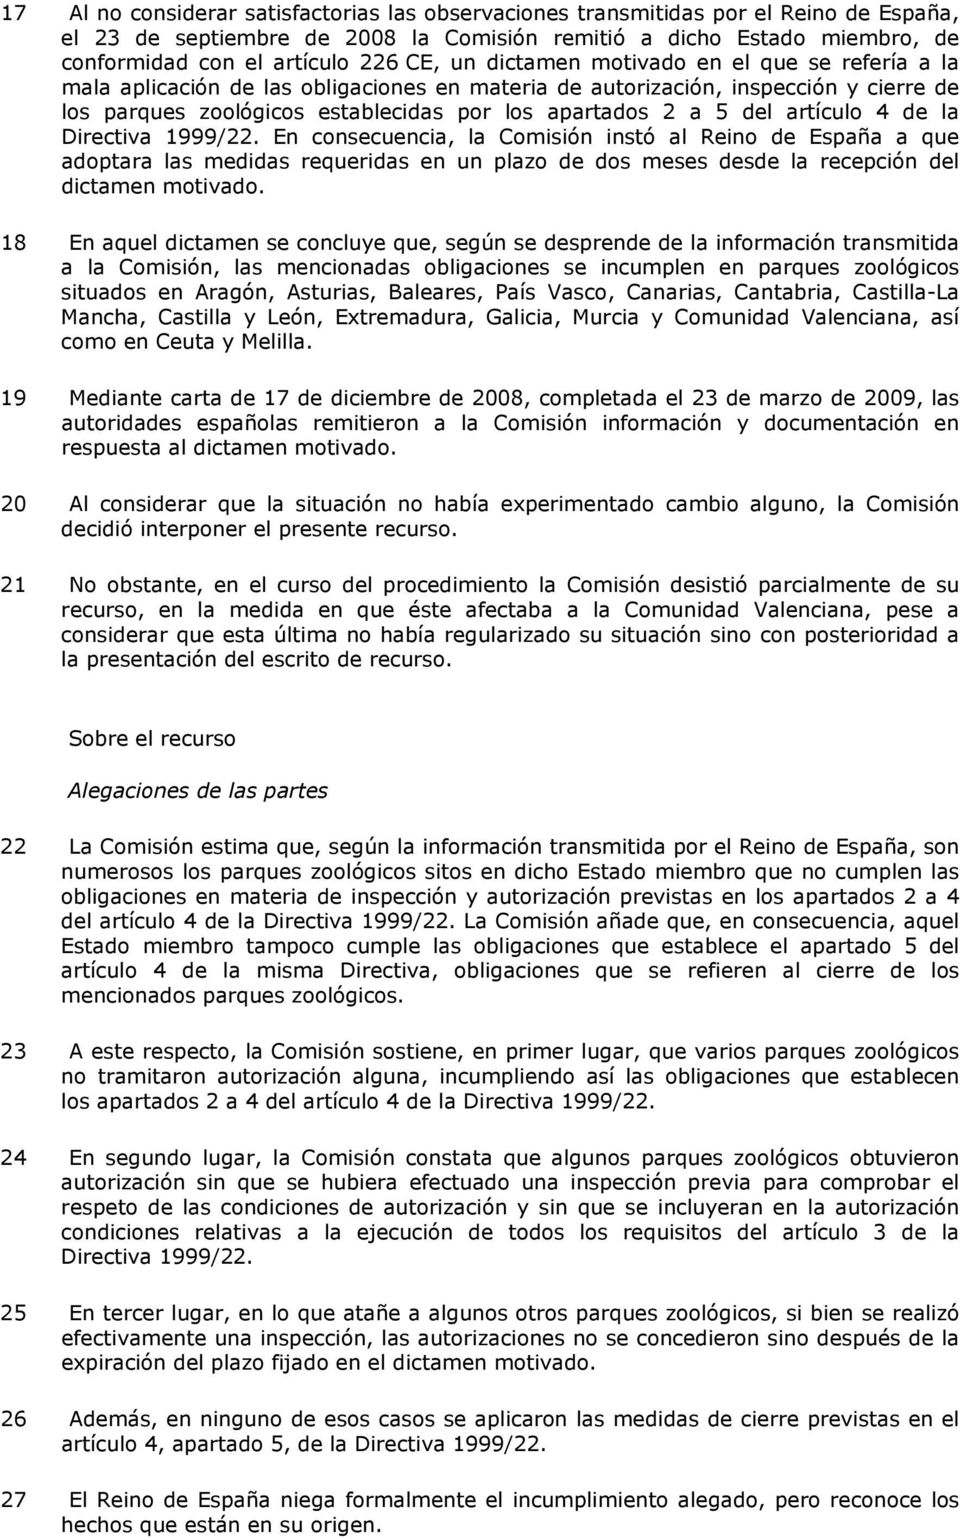 del artículo 4 de la Directiva 1999/22. En consecuencia, la Comisión instó al Reino de España a que adoptara las medidas requeridas en un plazo de dos meses desde la recepción del dictamen motivado.